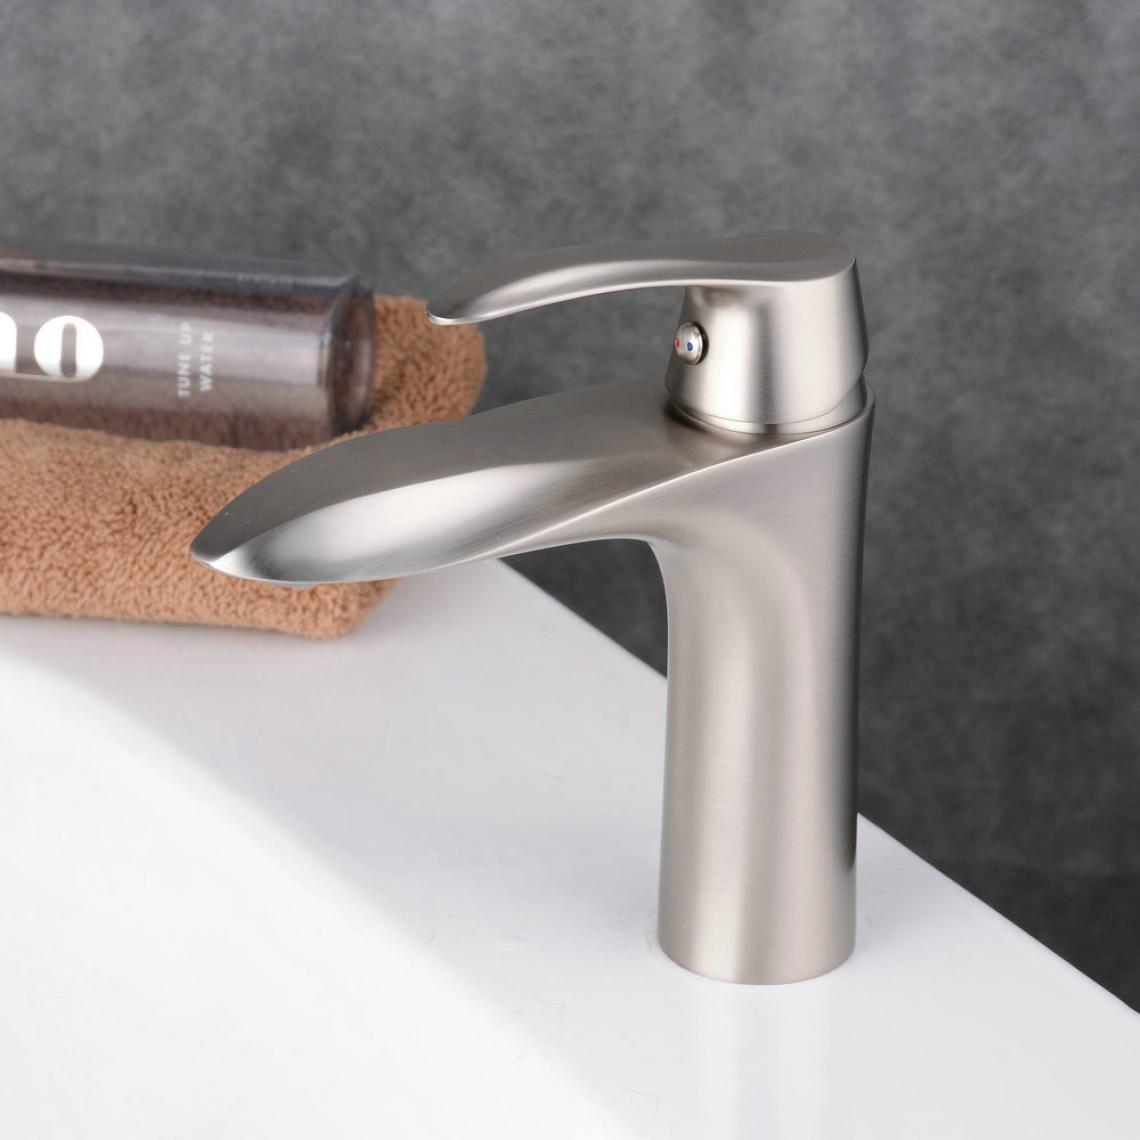 Kroos - Robinet mitigeur lavabo Nickel brossé contemporain aux lignes courbes bec long et droit - Robinet de lavabo